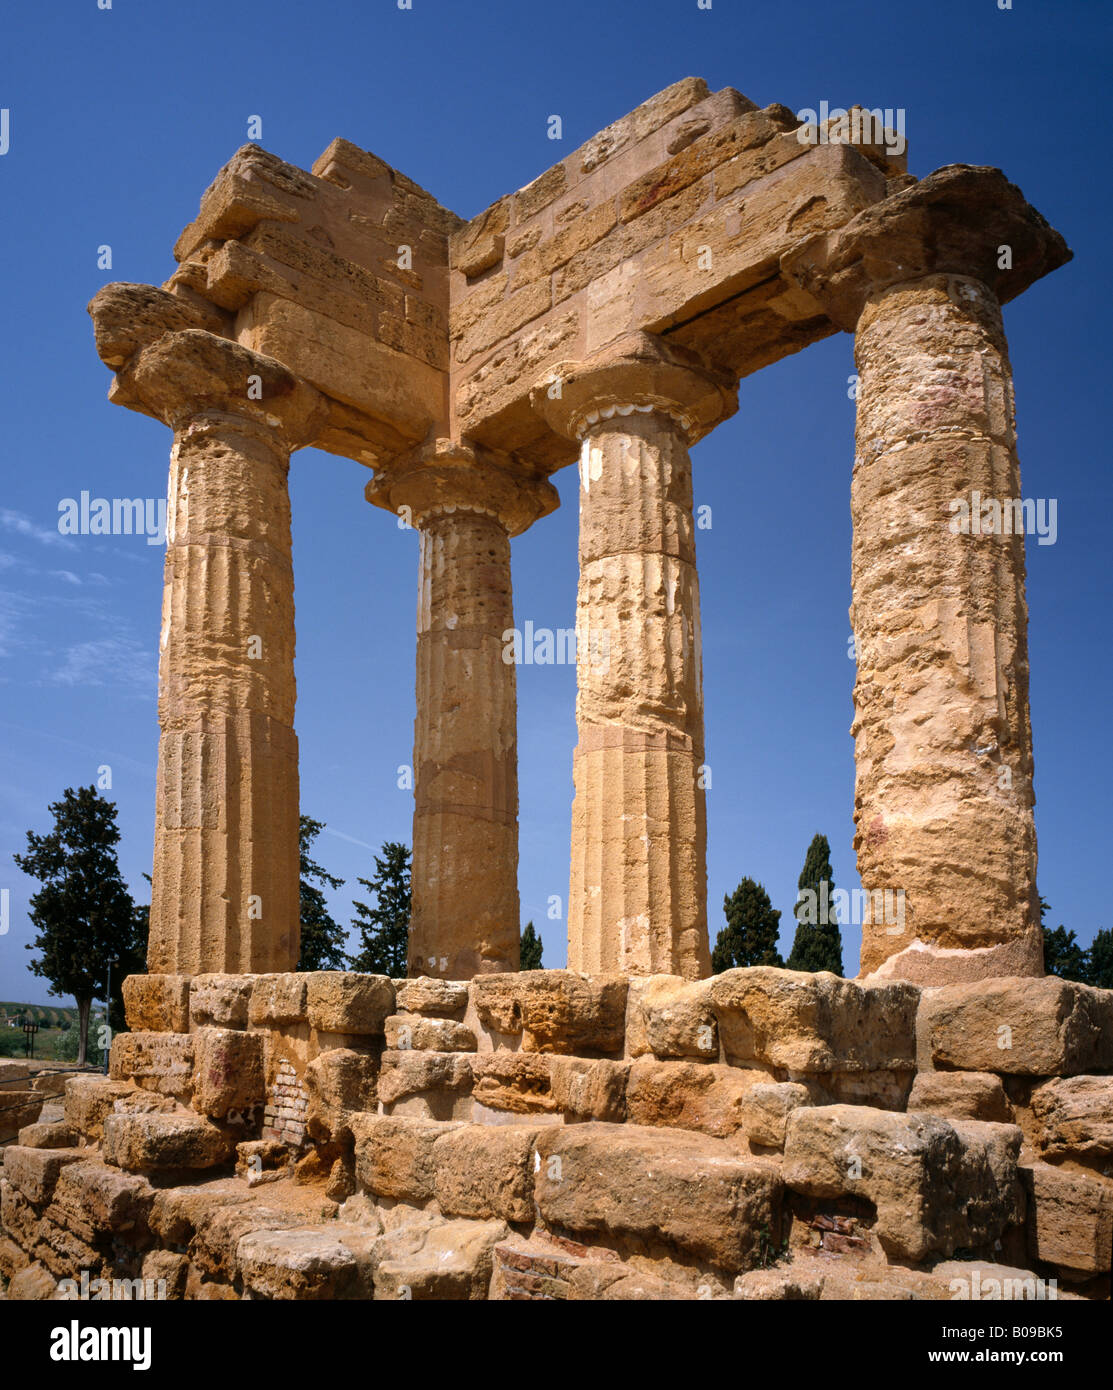 El templo de dioscuri, Castor y Pólux, Valle de los Templos de Agrigento Sicilia Italia UE. Foto de stock